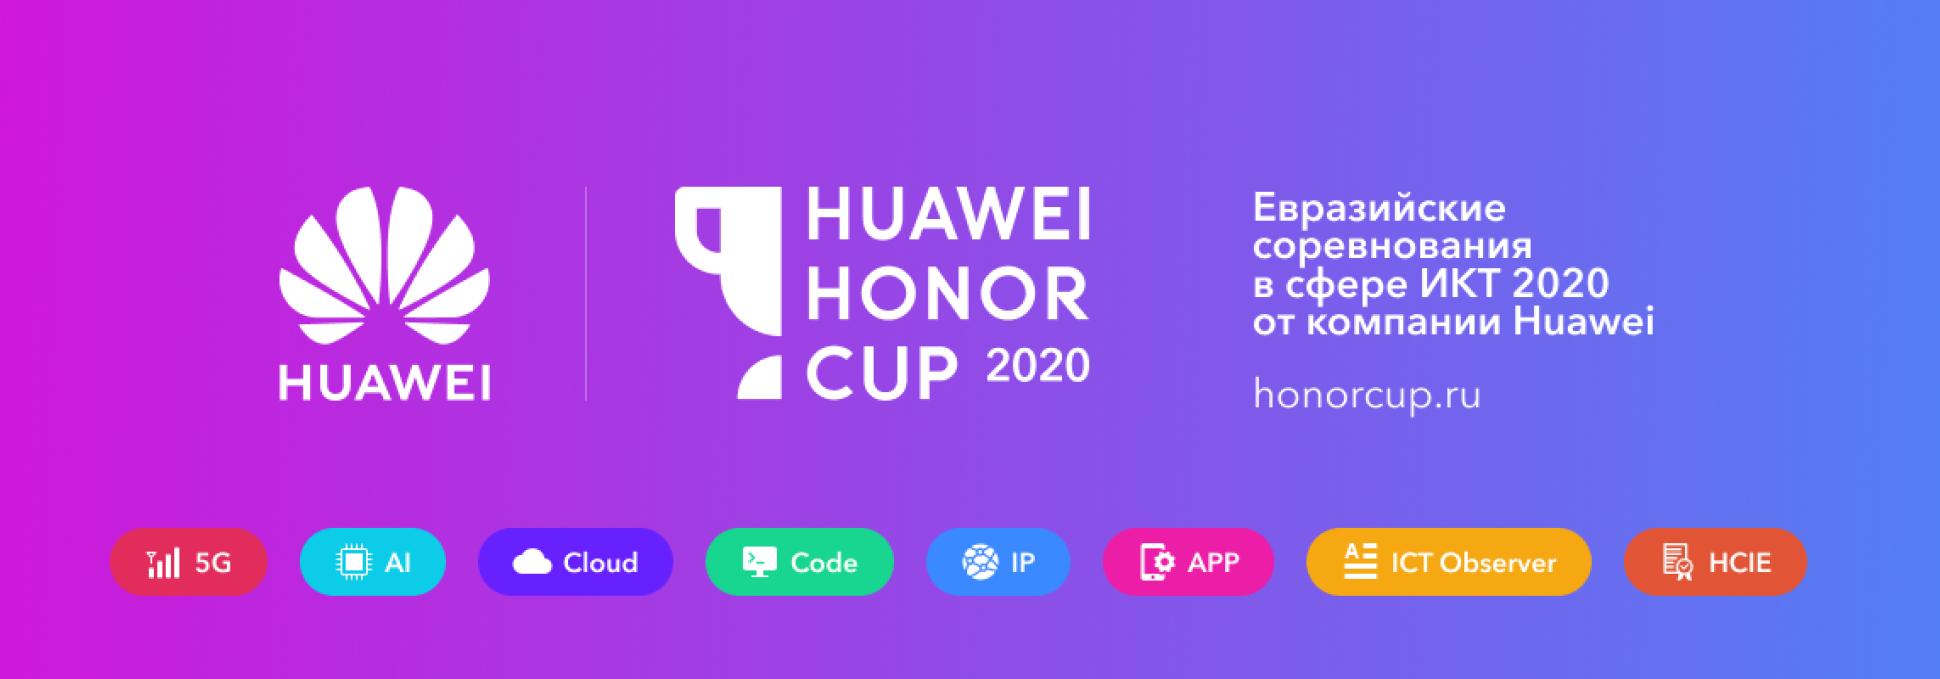 Обложка курса Huawei Honor Cup 2020